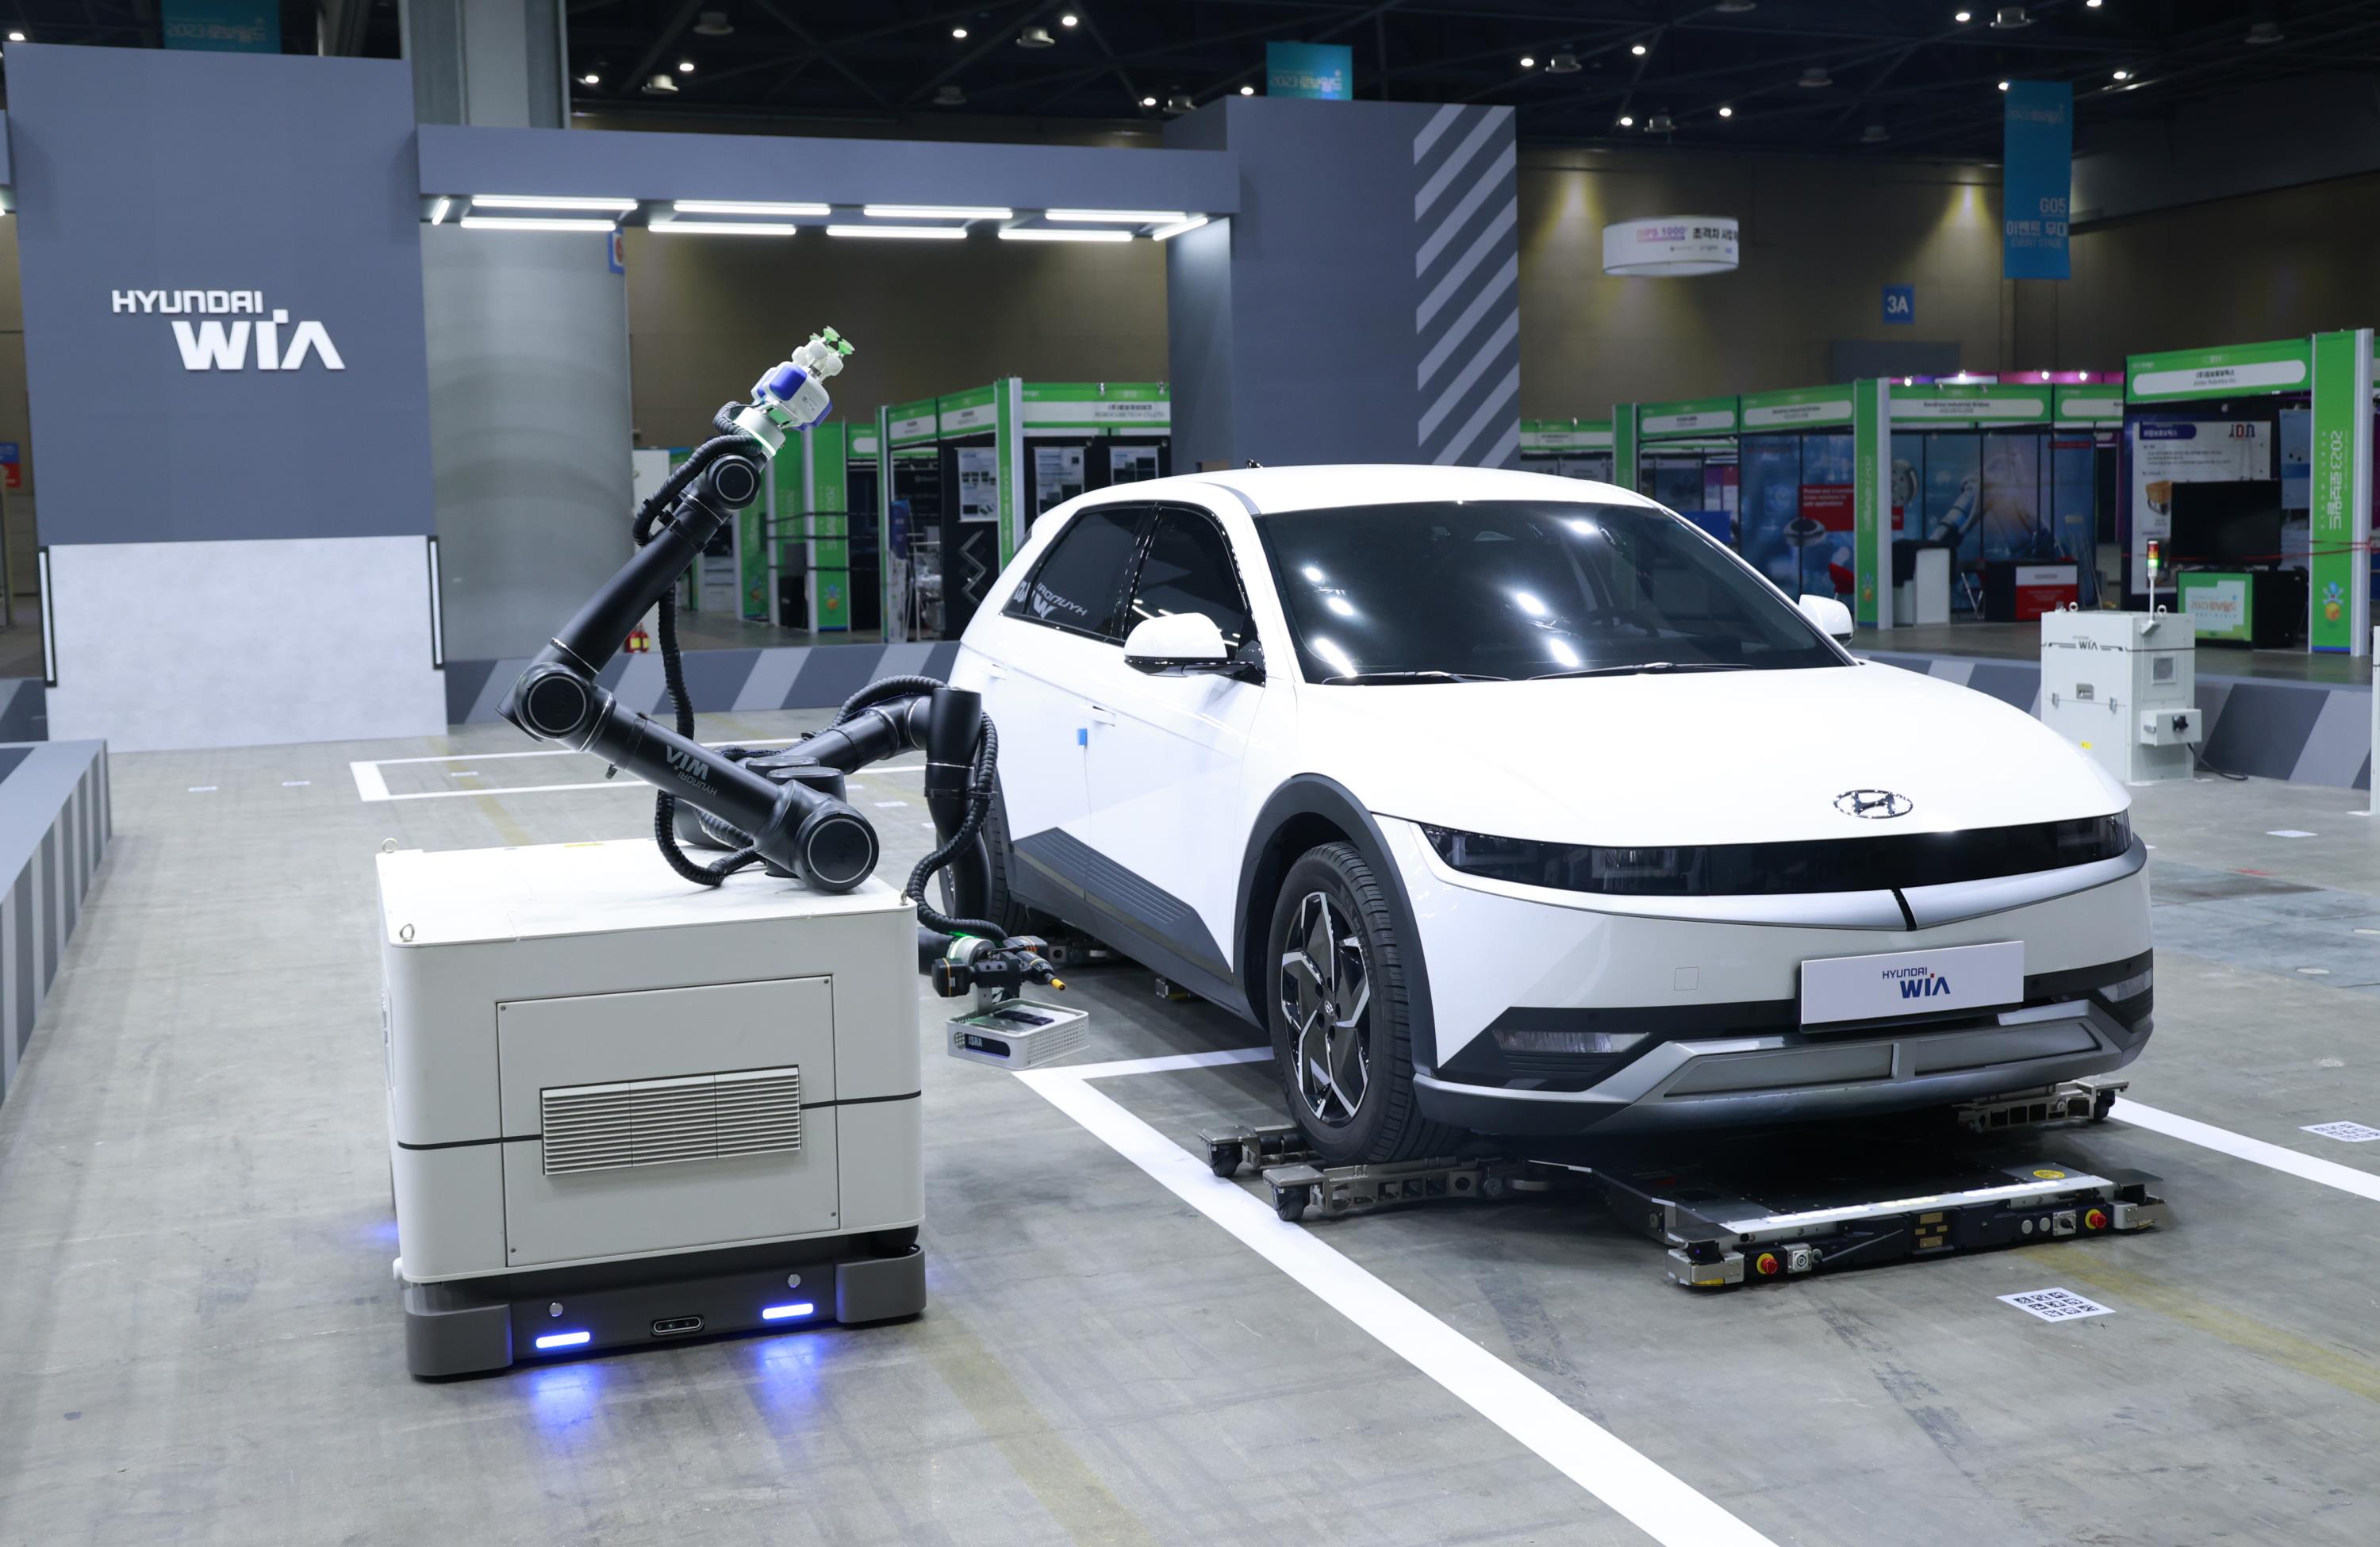 현대위아가 11일 경기도 고양시 KINTEX에서 열린 ‘로보월드 2023’에서 공개한 주차로봇의 모습. 얇고 넓은 주차로봇이 자동차를 들어 올려 주차하고 있다.